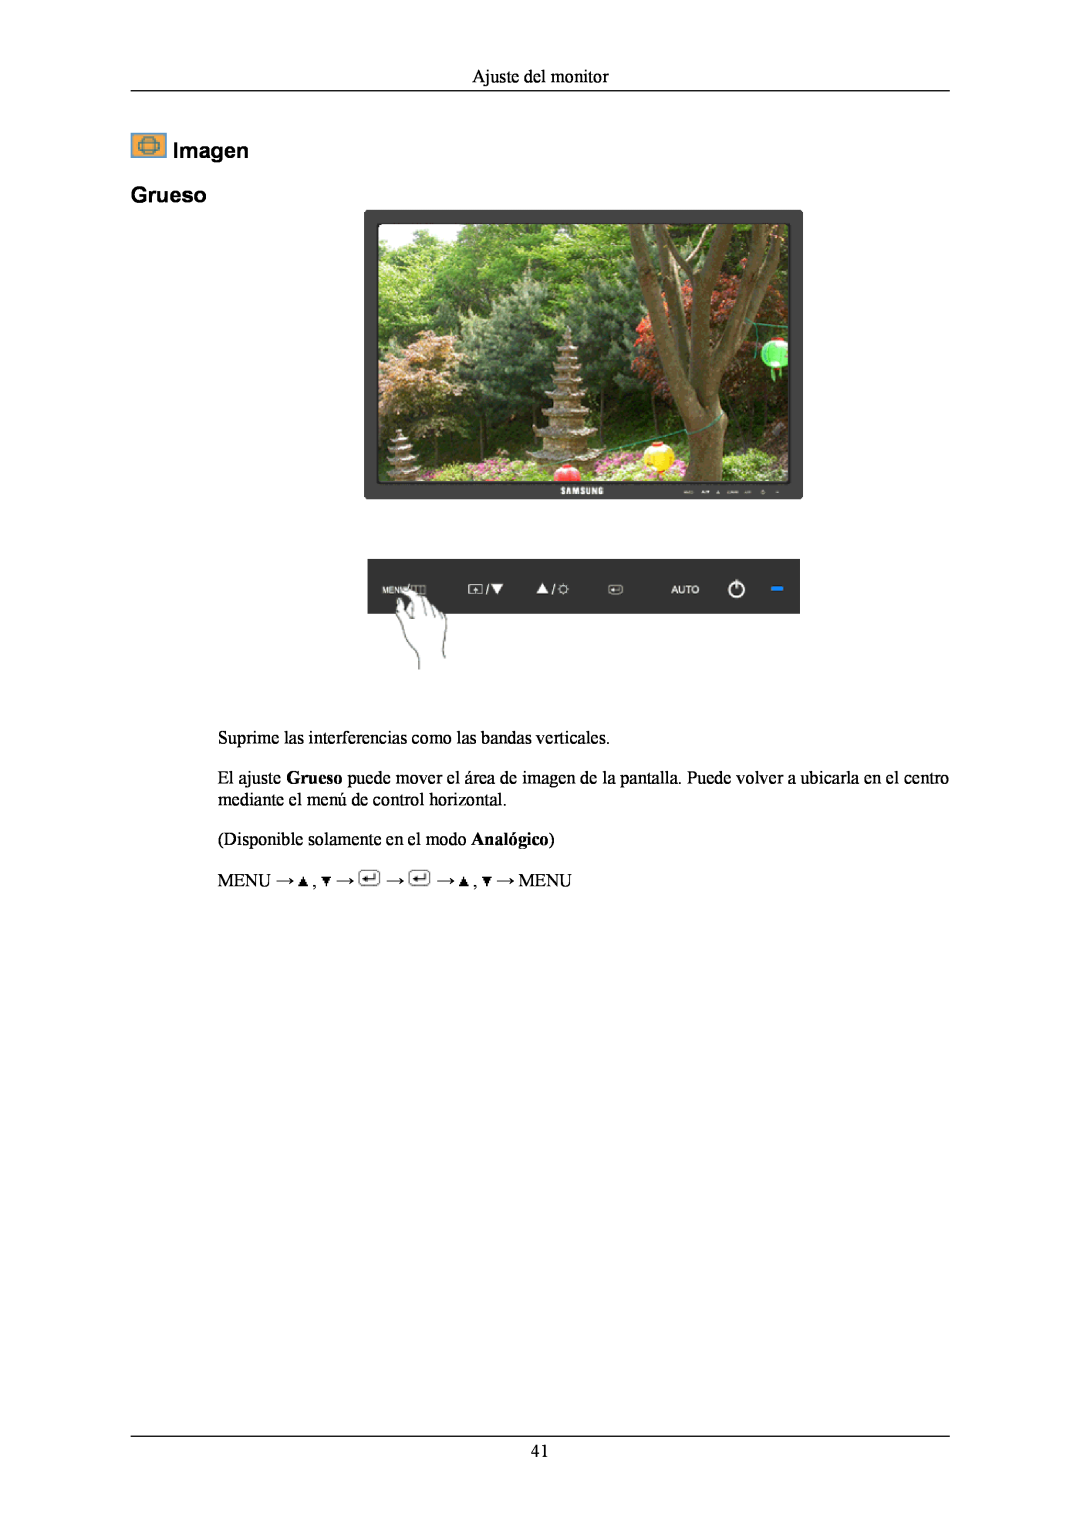 Samsung LS20MYNKF/EDC manual Imagen Grueso, Ajuste del monitor, Suprime las interferencias como las bandas verticales 